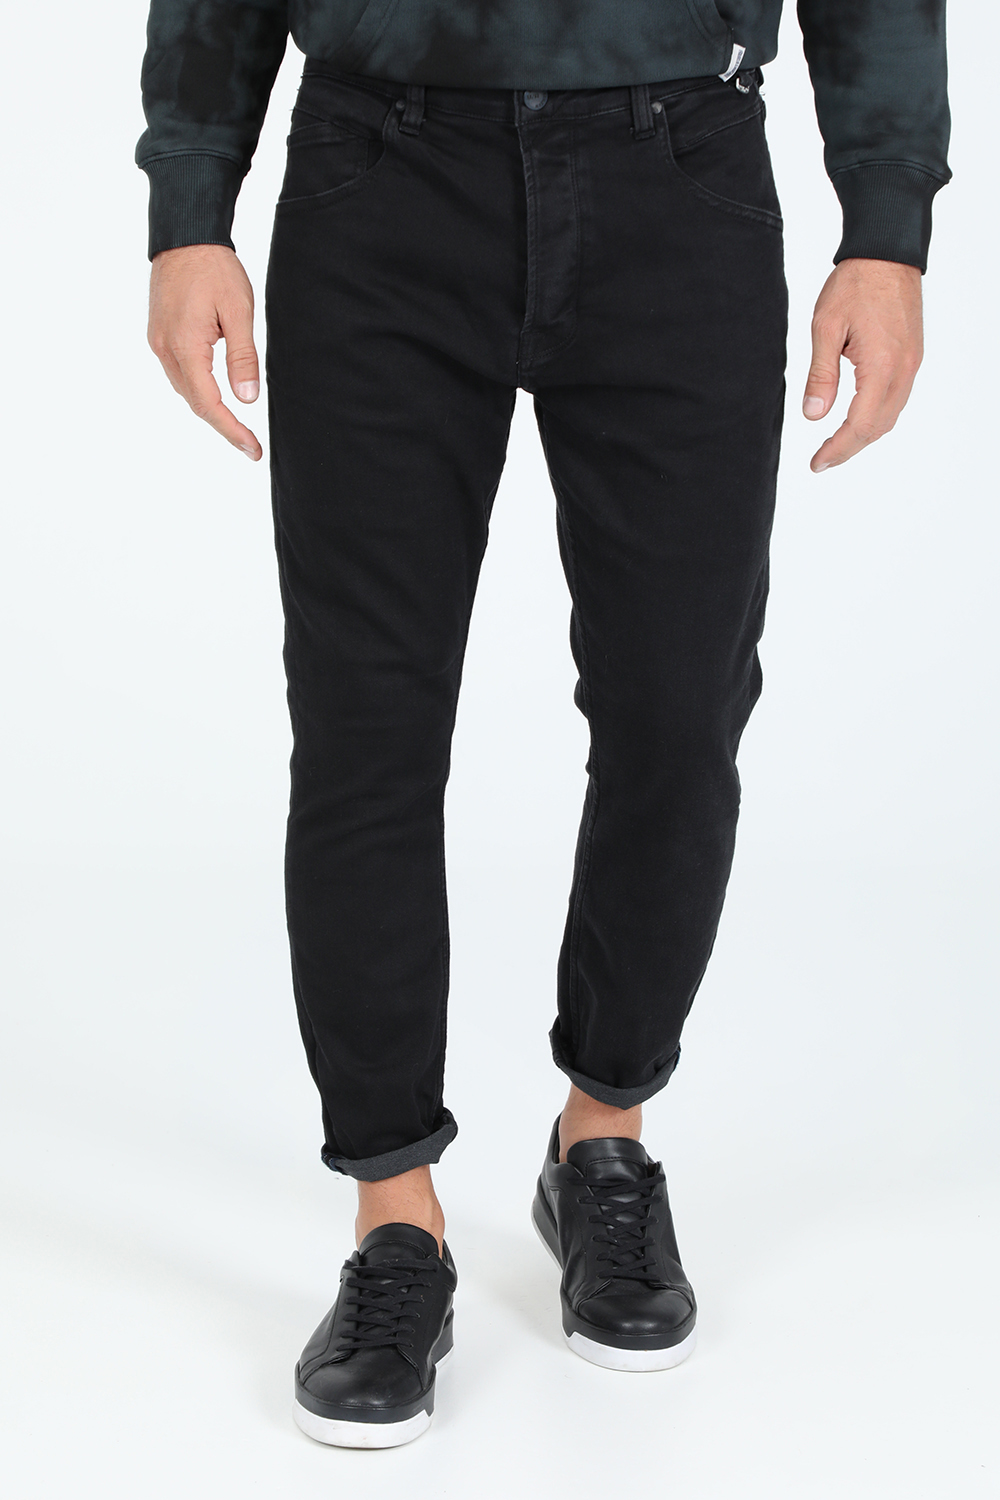 Ανδρικά/Ρούχα/Τζίν/Skinny GABBA - Ανδρικό jean παντελόνι GABBA Alex K3819 SANZA μαύρο